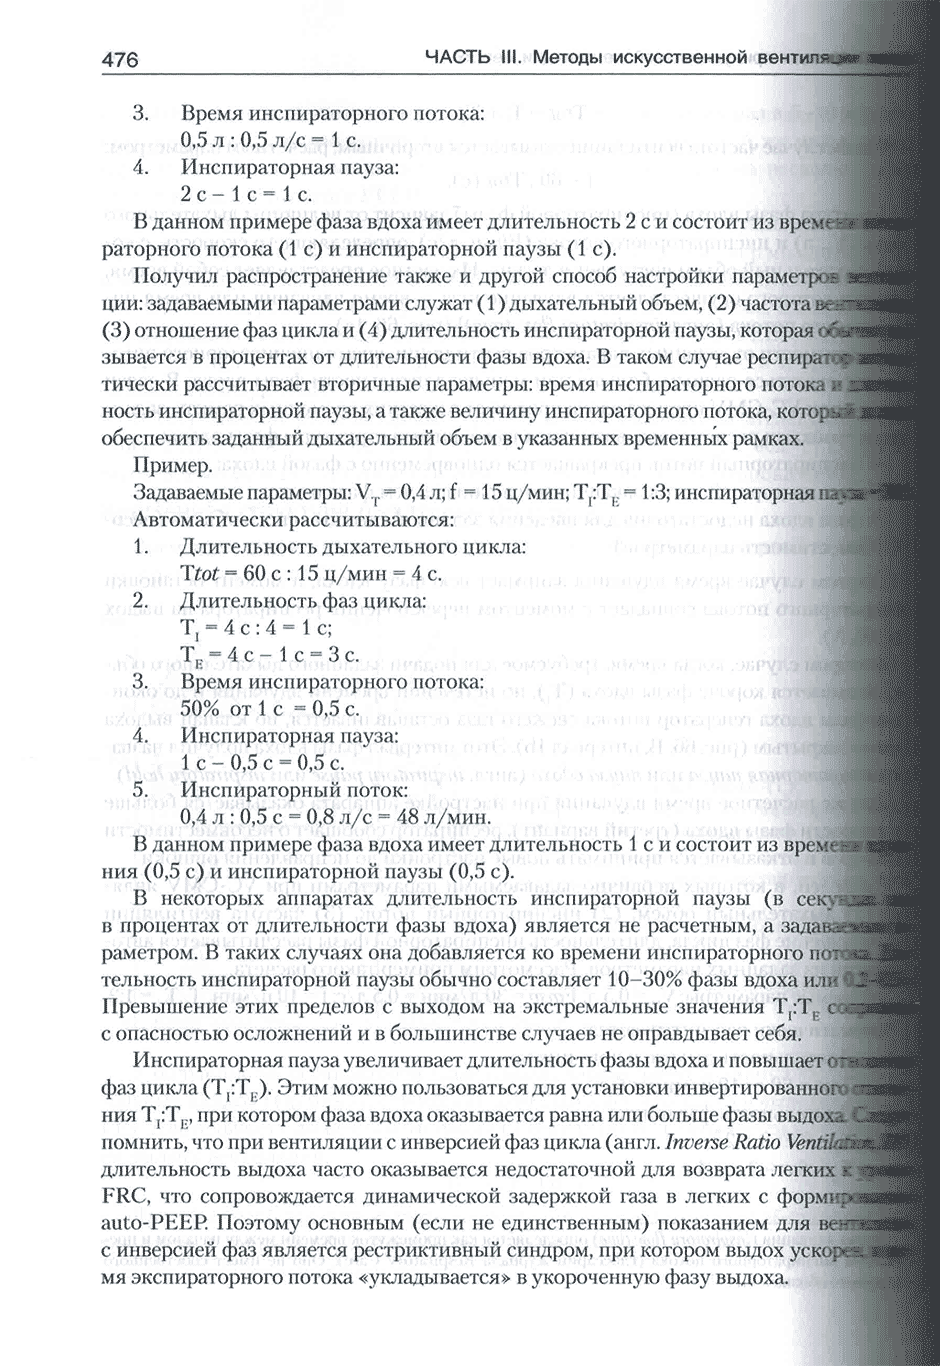 Пример страницы из книги "Искусственная вентиляция легких как медицинская технология" - Шурыгин И. А.